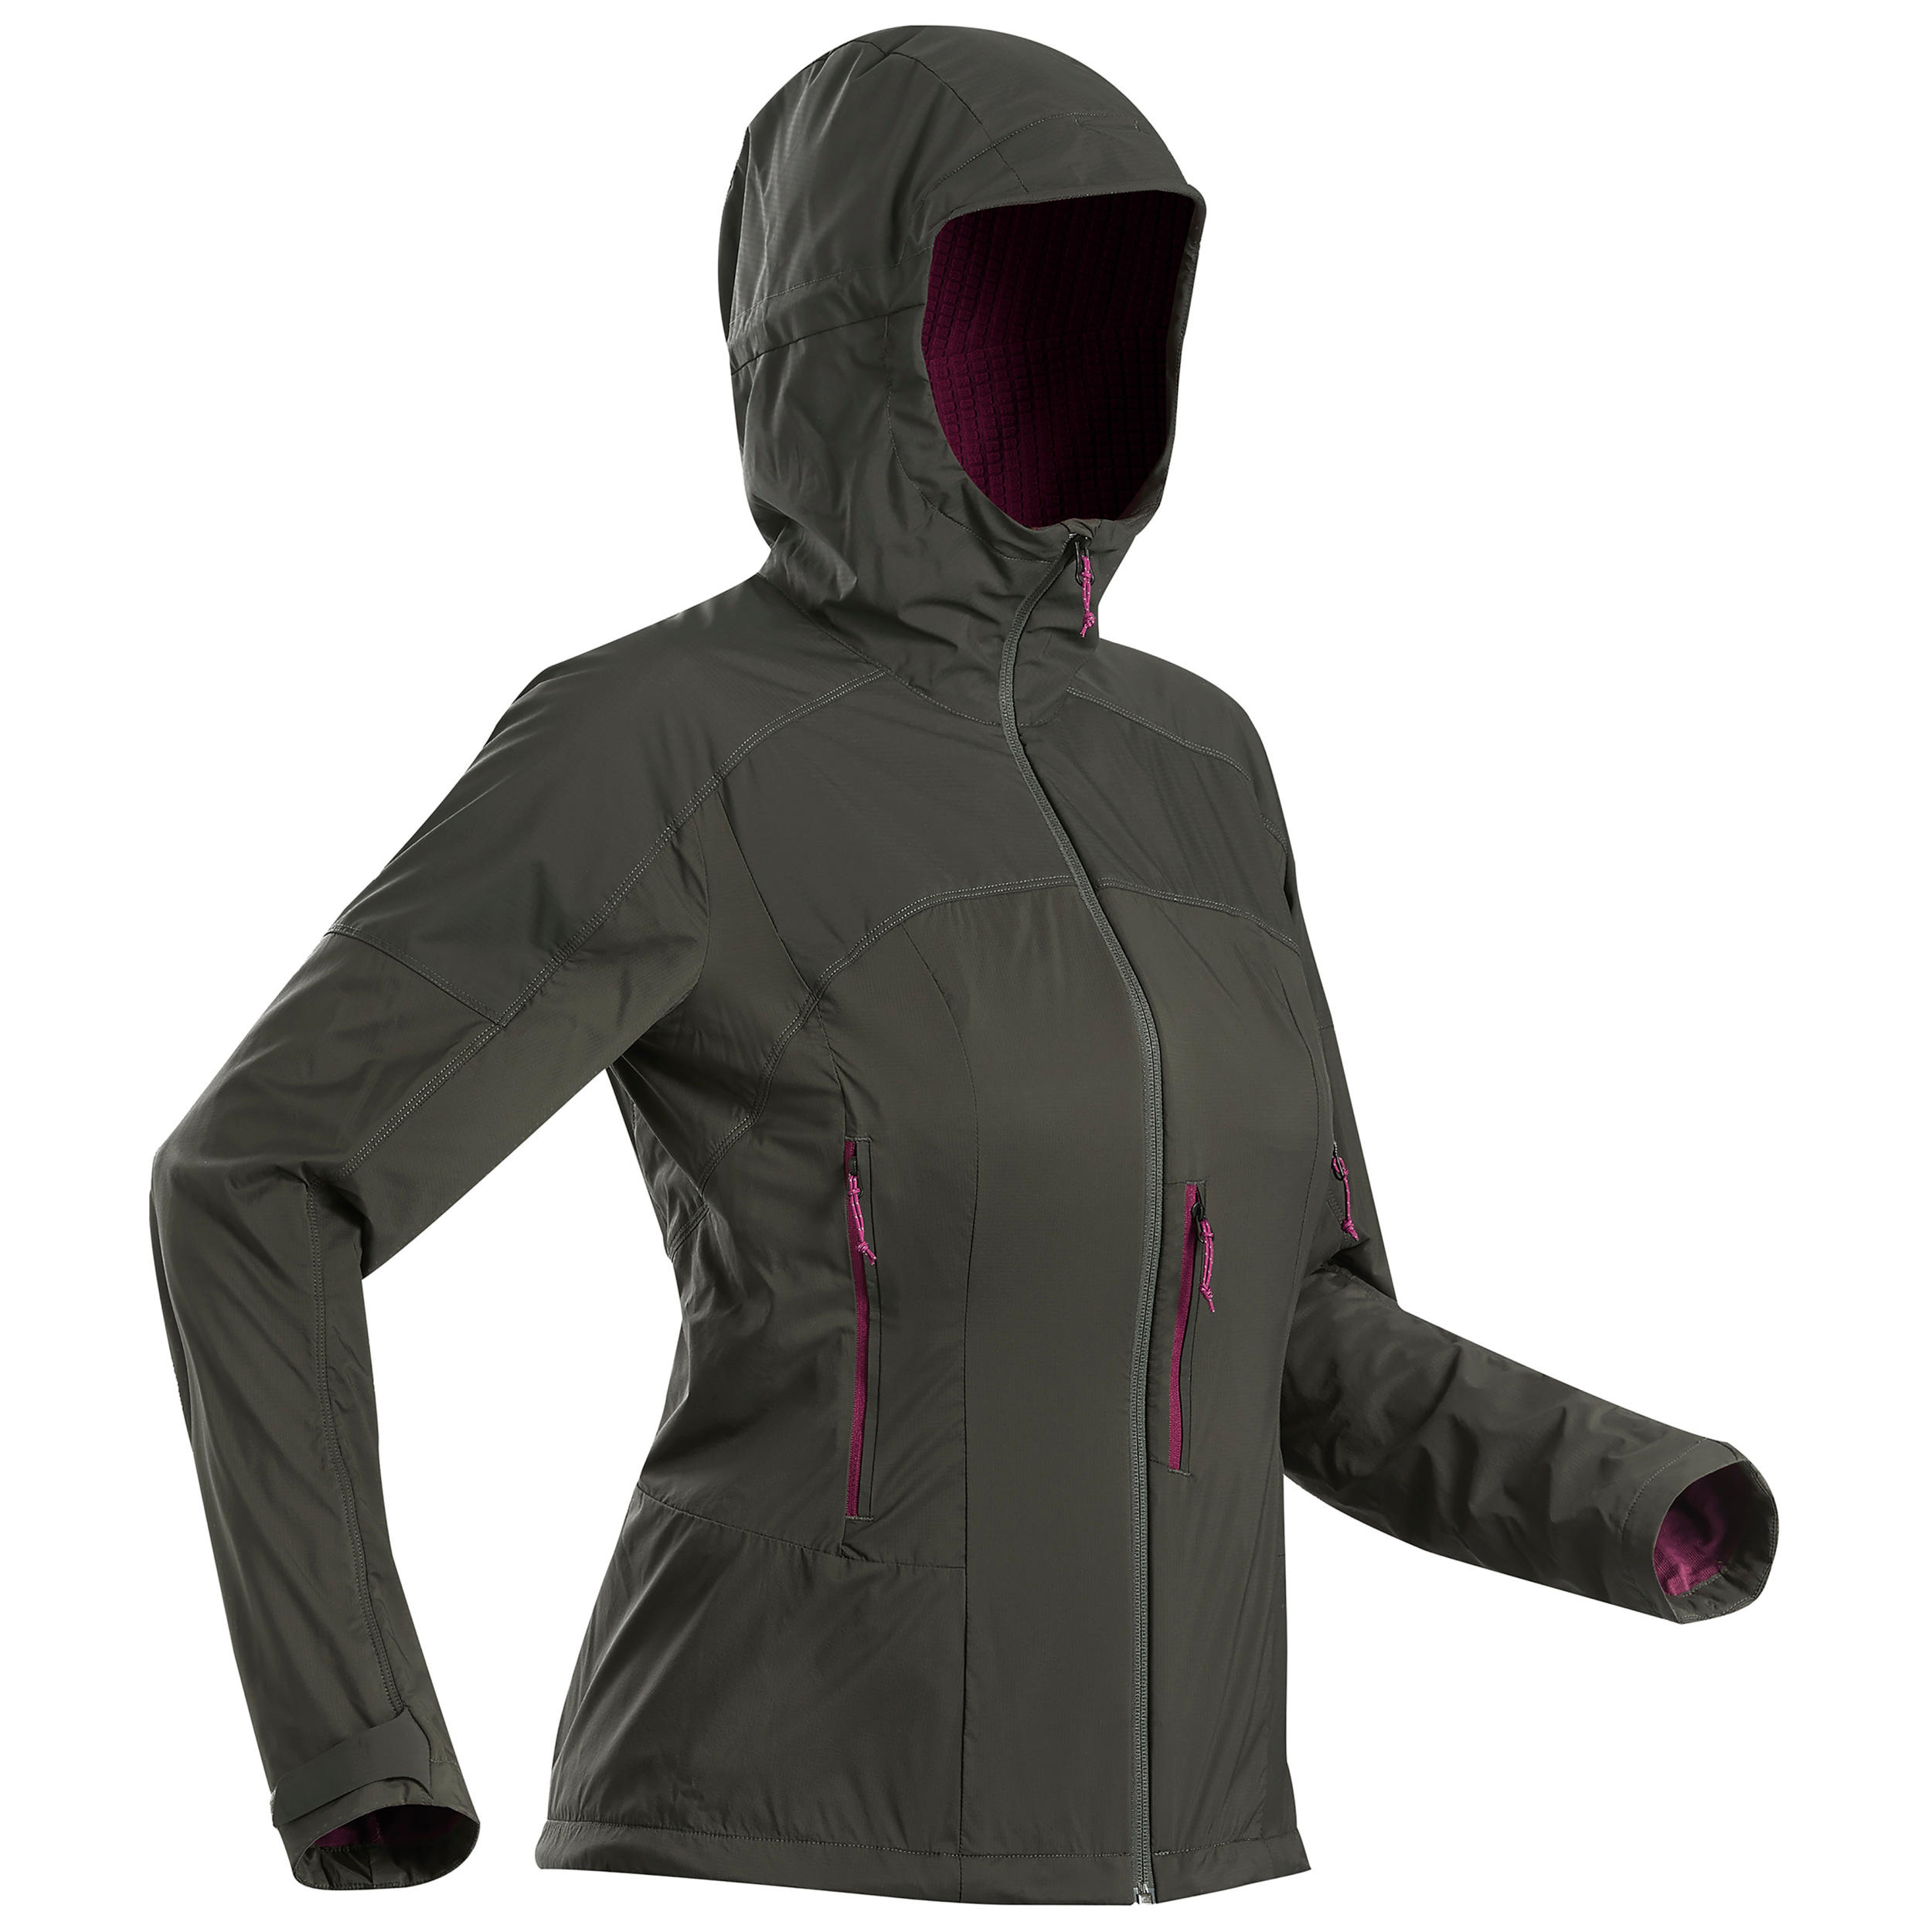 Women's Waterproof Jackets & Rain Coats